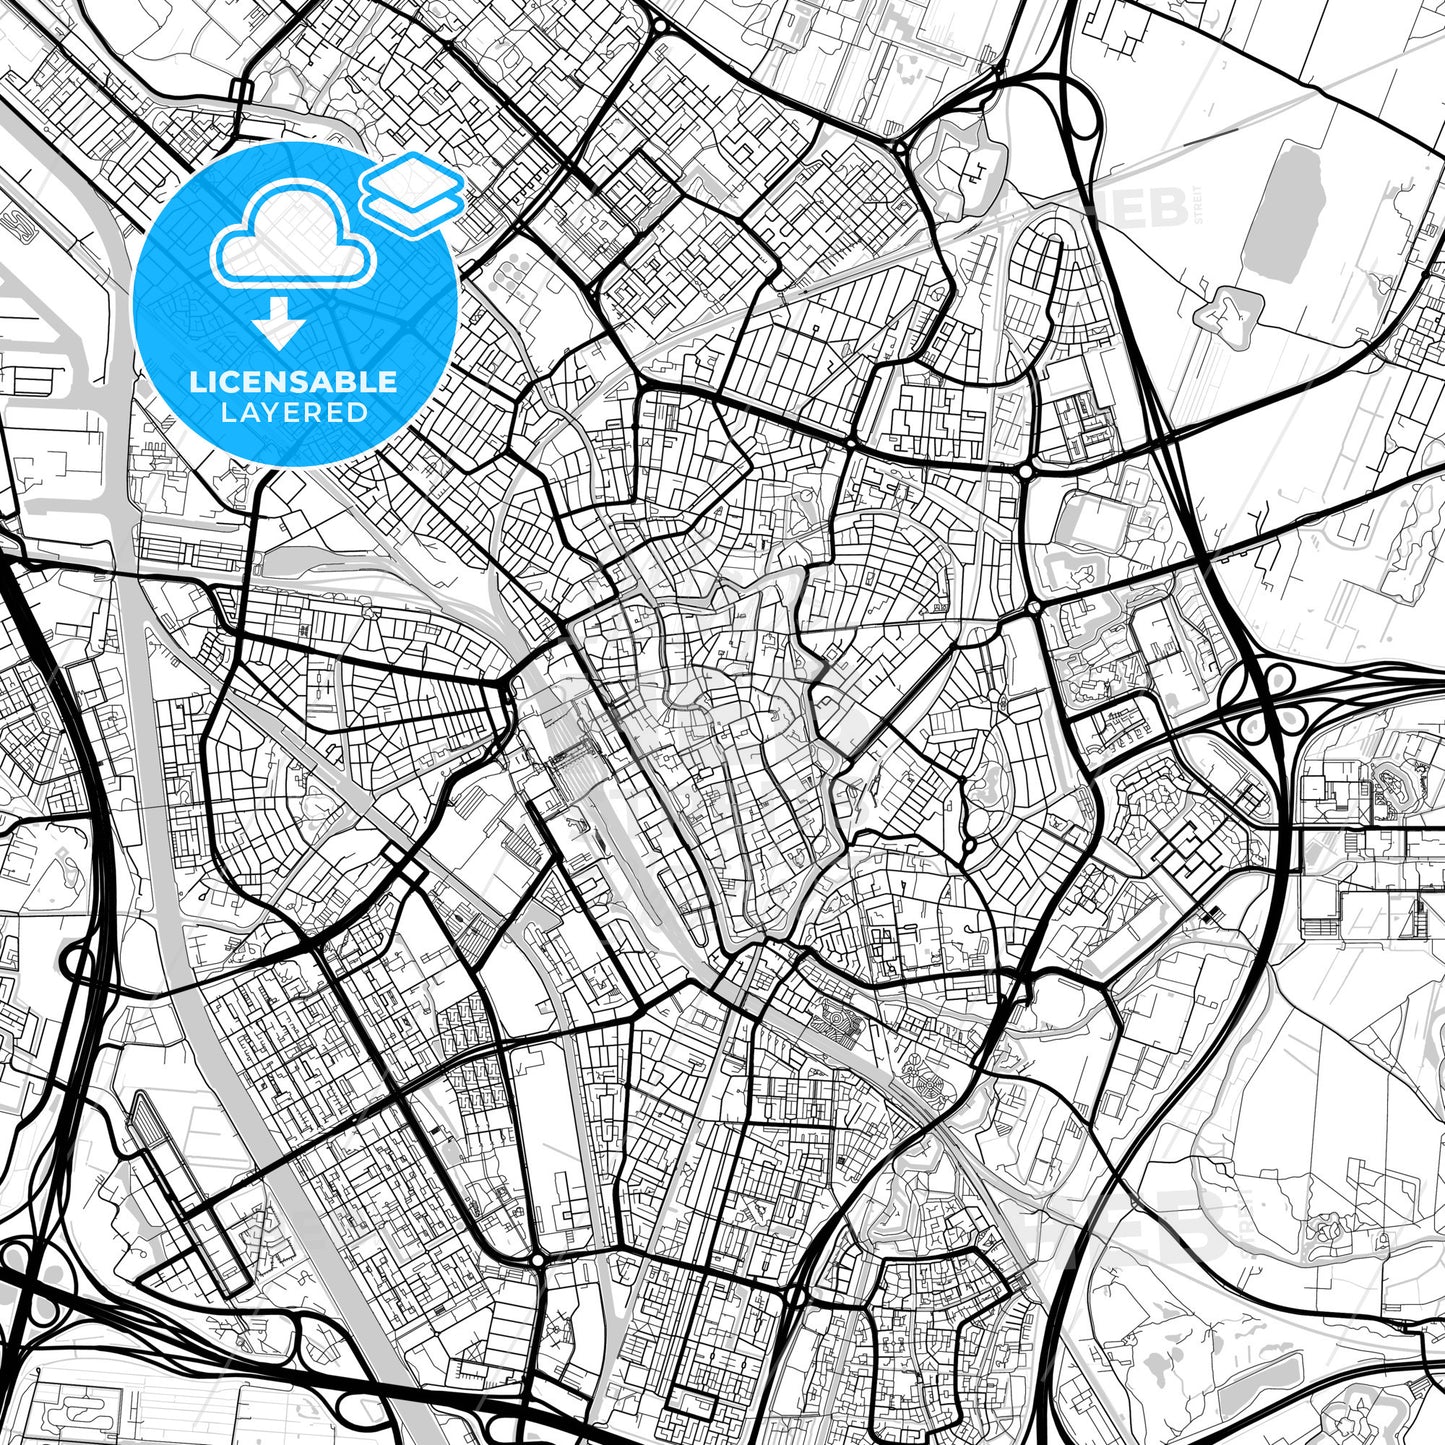 Layered PDF map of Utrecht, Utrecht, Netherlands